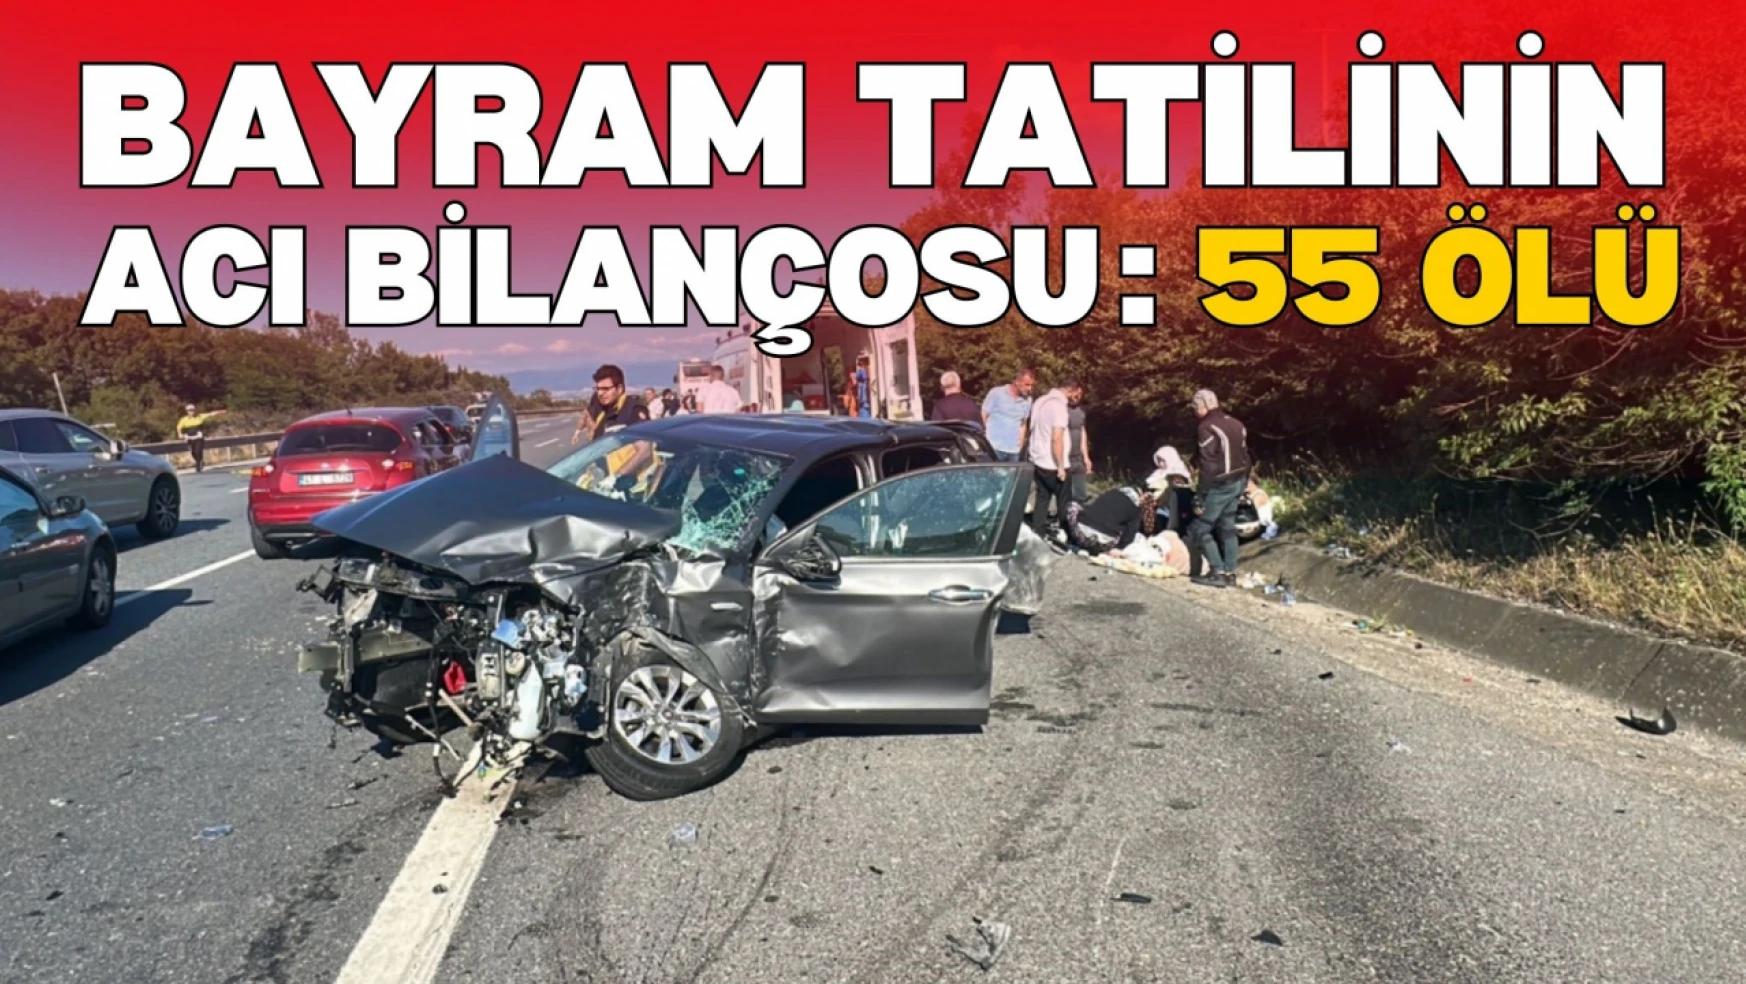 Bayram Tatilinin 7 Gününde Trafik Kazalarında 55 Kişi Hayatını Kaybetti